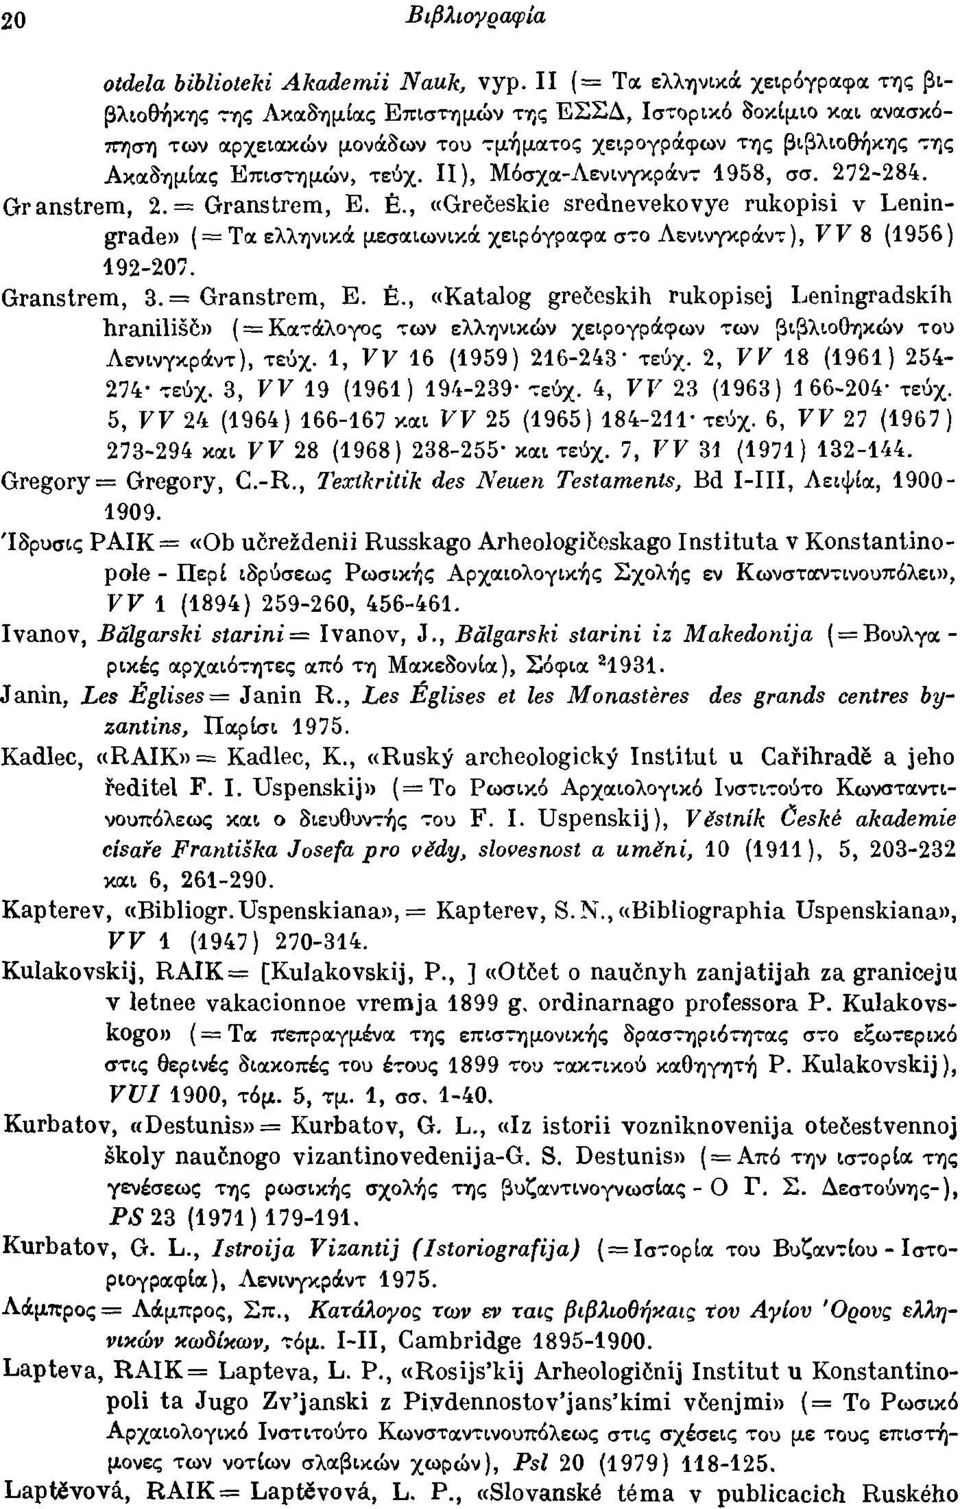 Ακιχ8ημίιχς Επιστημών, τεύχ. Π), Mόσχιx-Λενινγκpocν~1958, σσ. 272-284. Granstrem, 2. = Granstrem, Ε. Ε., «Greceskie srednevekovye rukopisi ν Leningrade» (= Τιχ ελλψικoc μεσιχιωνικoc χειρόγριχφιχ σ-:ο ΛενινγκρOCντ), ΓΓ 8 (1956) 192-207.